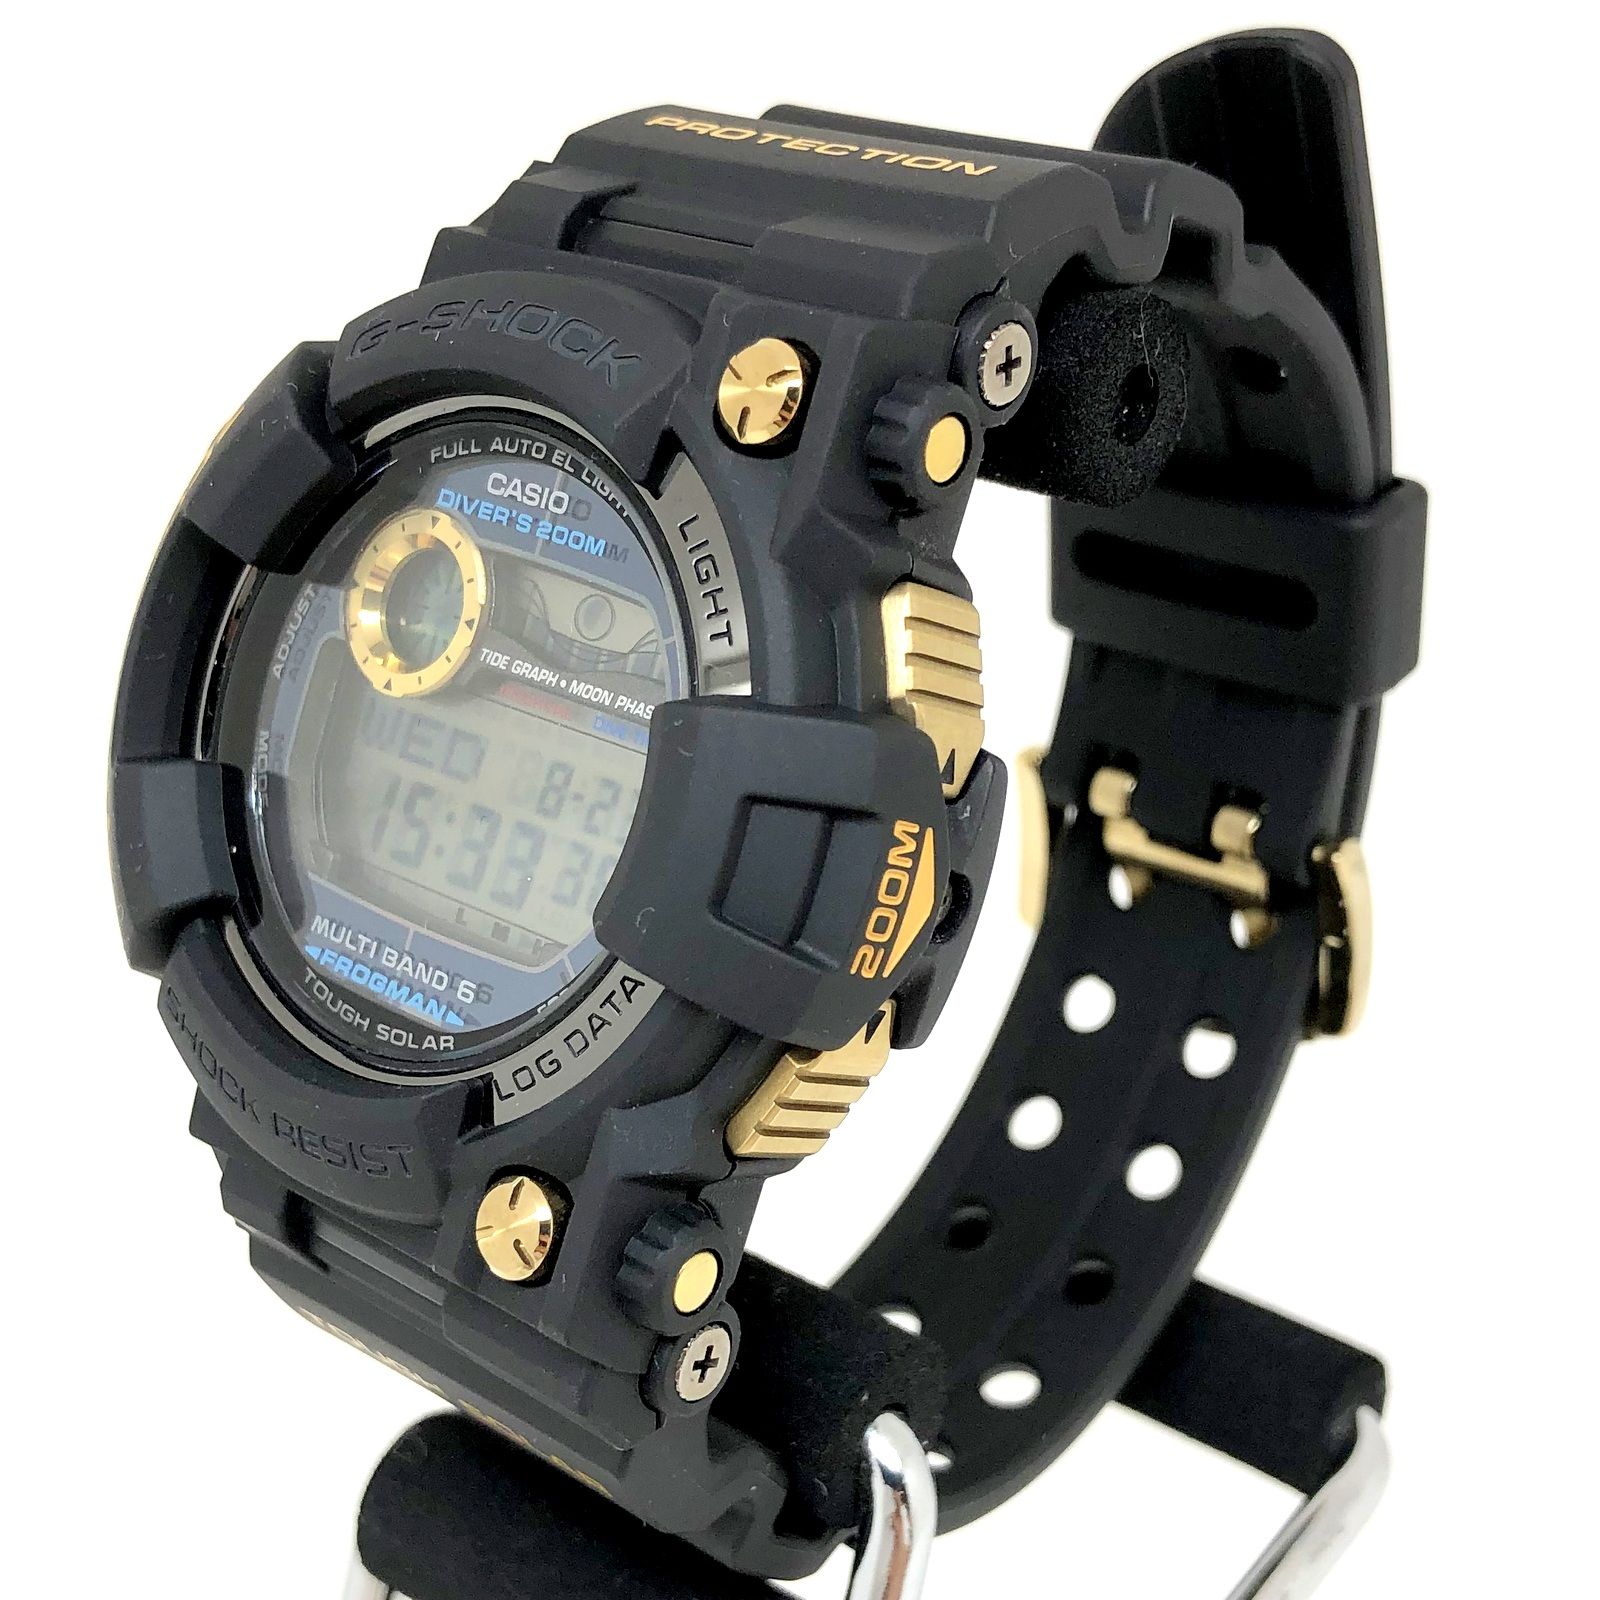 G-SHOCK ジーショック 腕時計 GWF-1000G-1JR